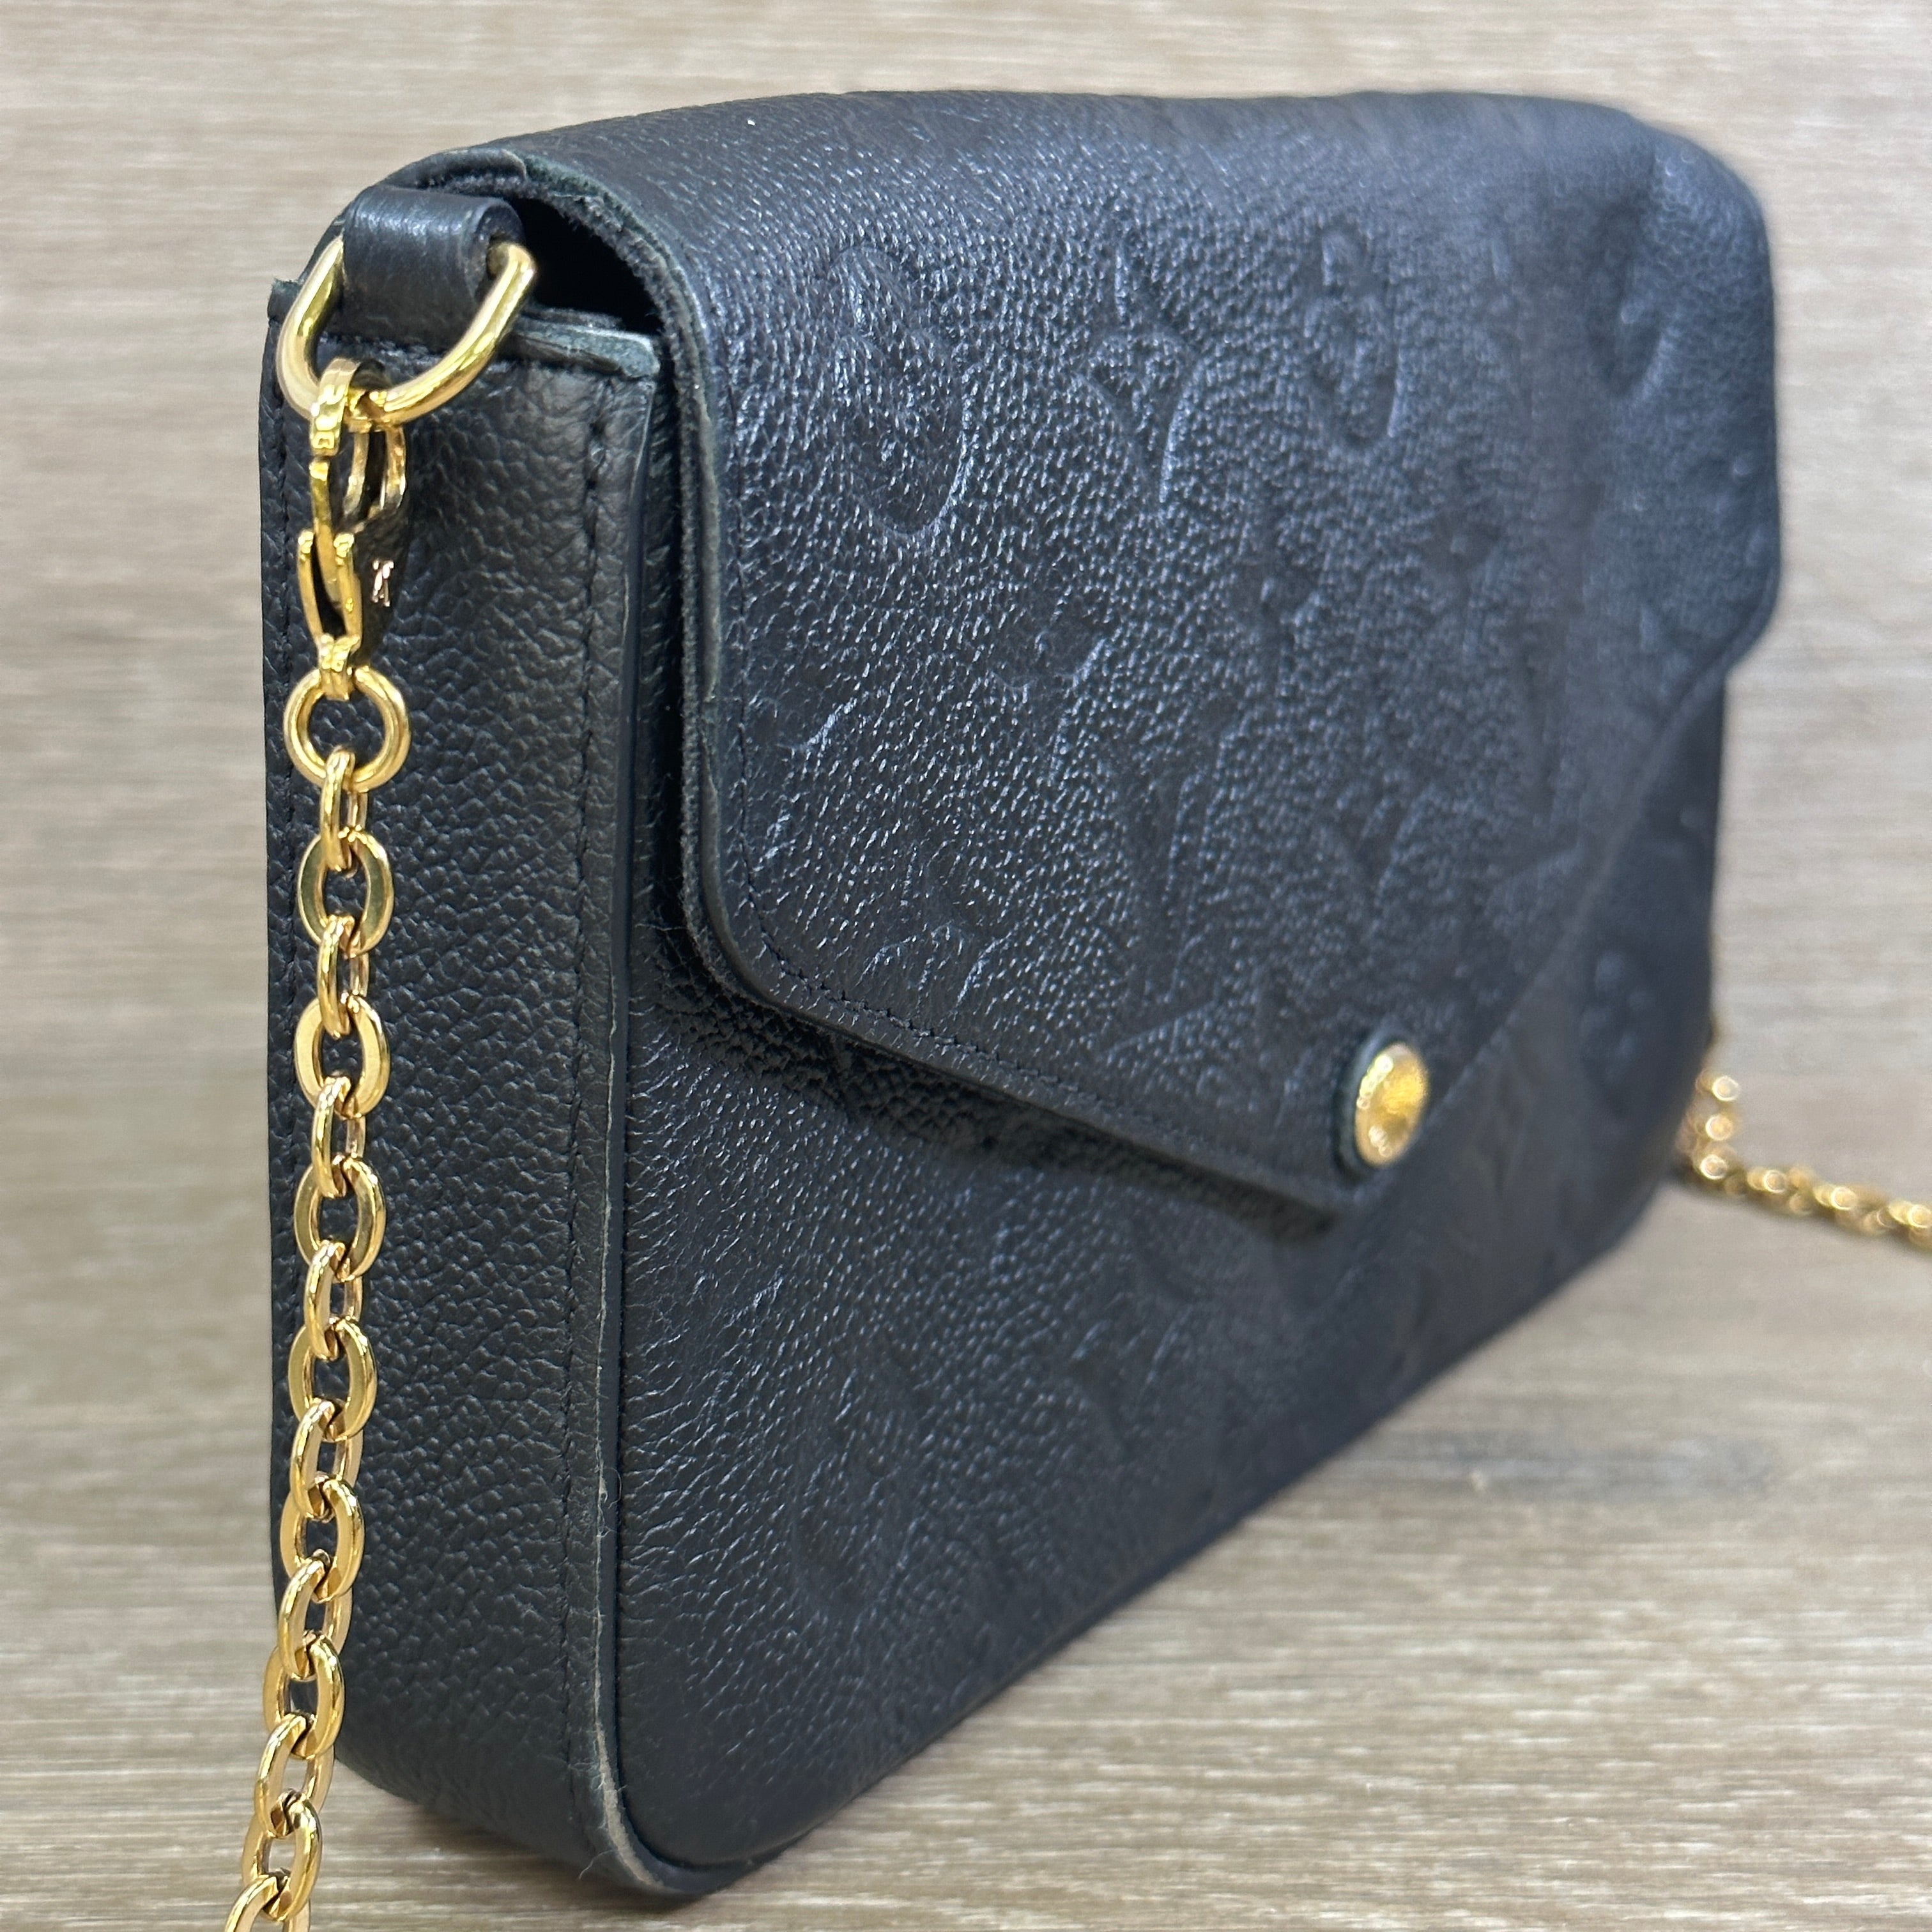 lv small black purse